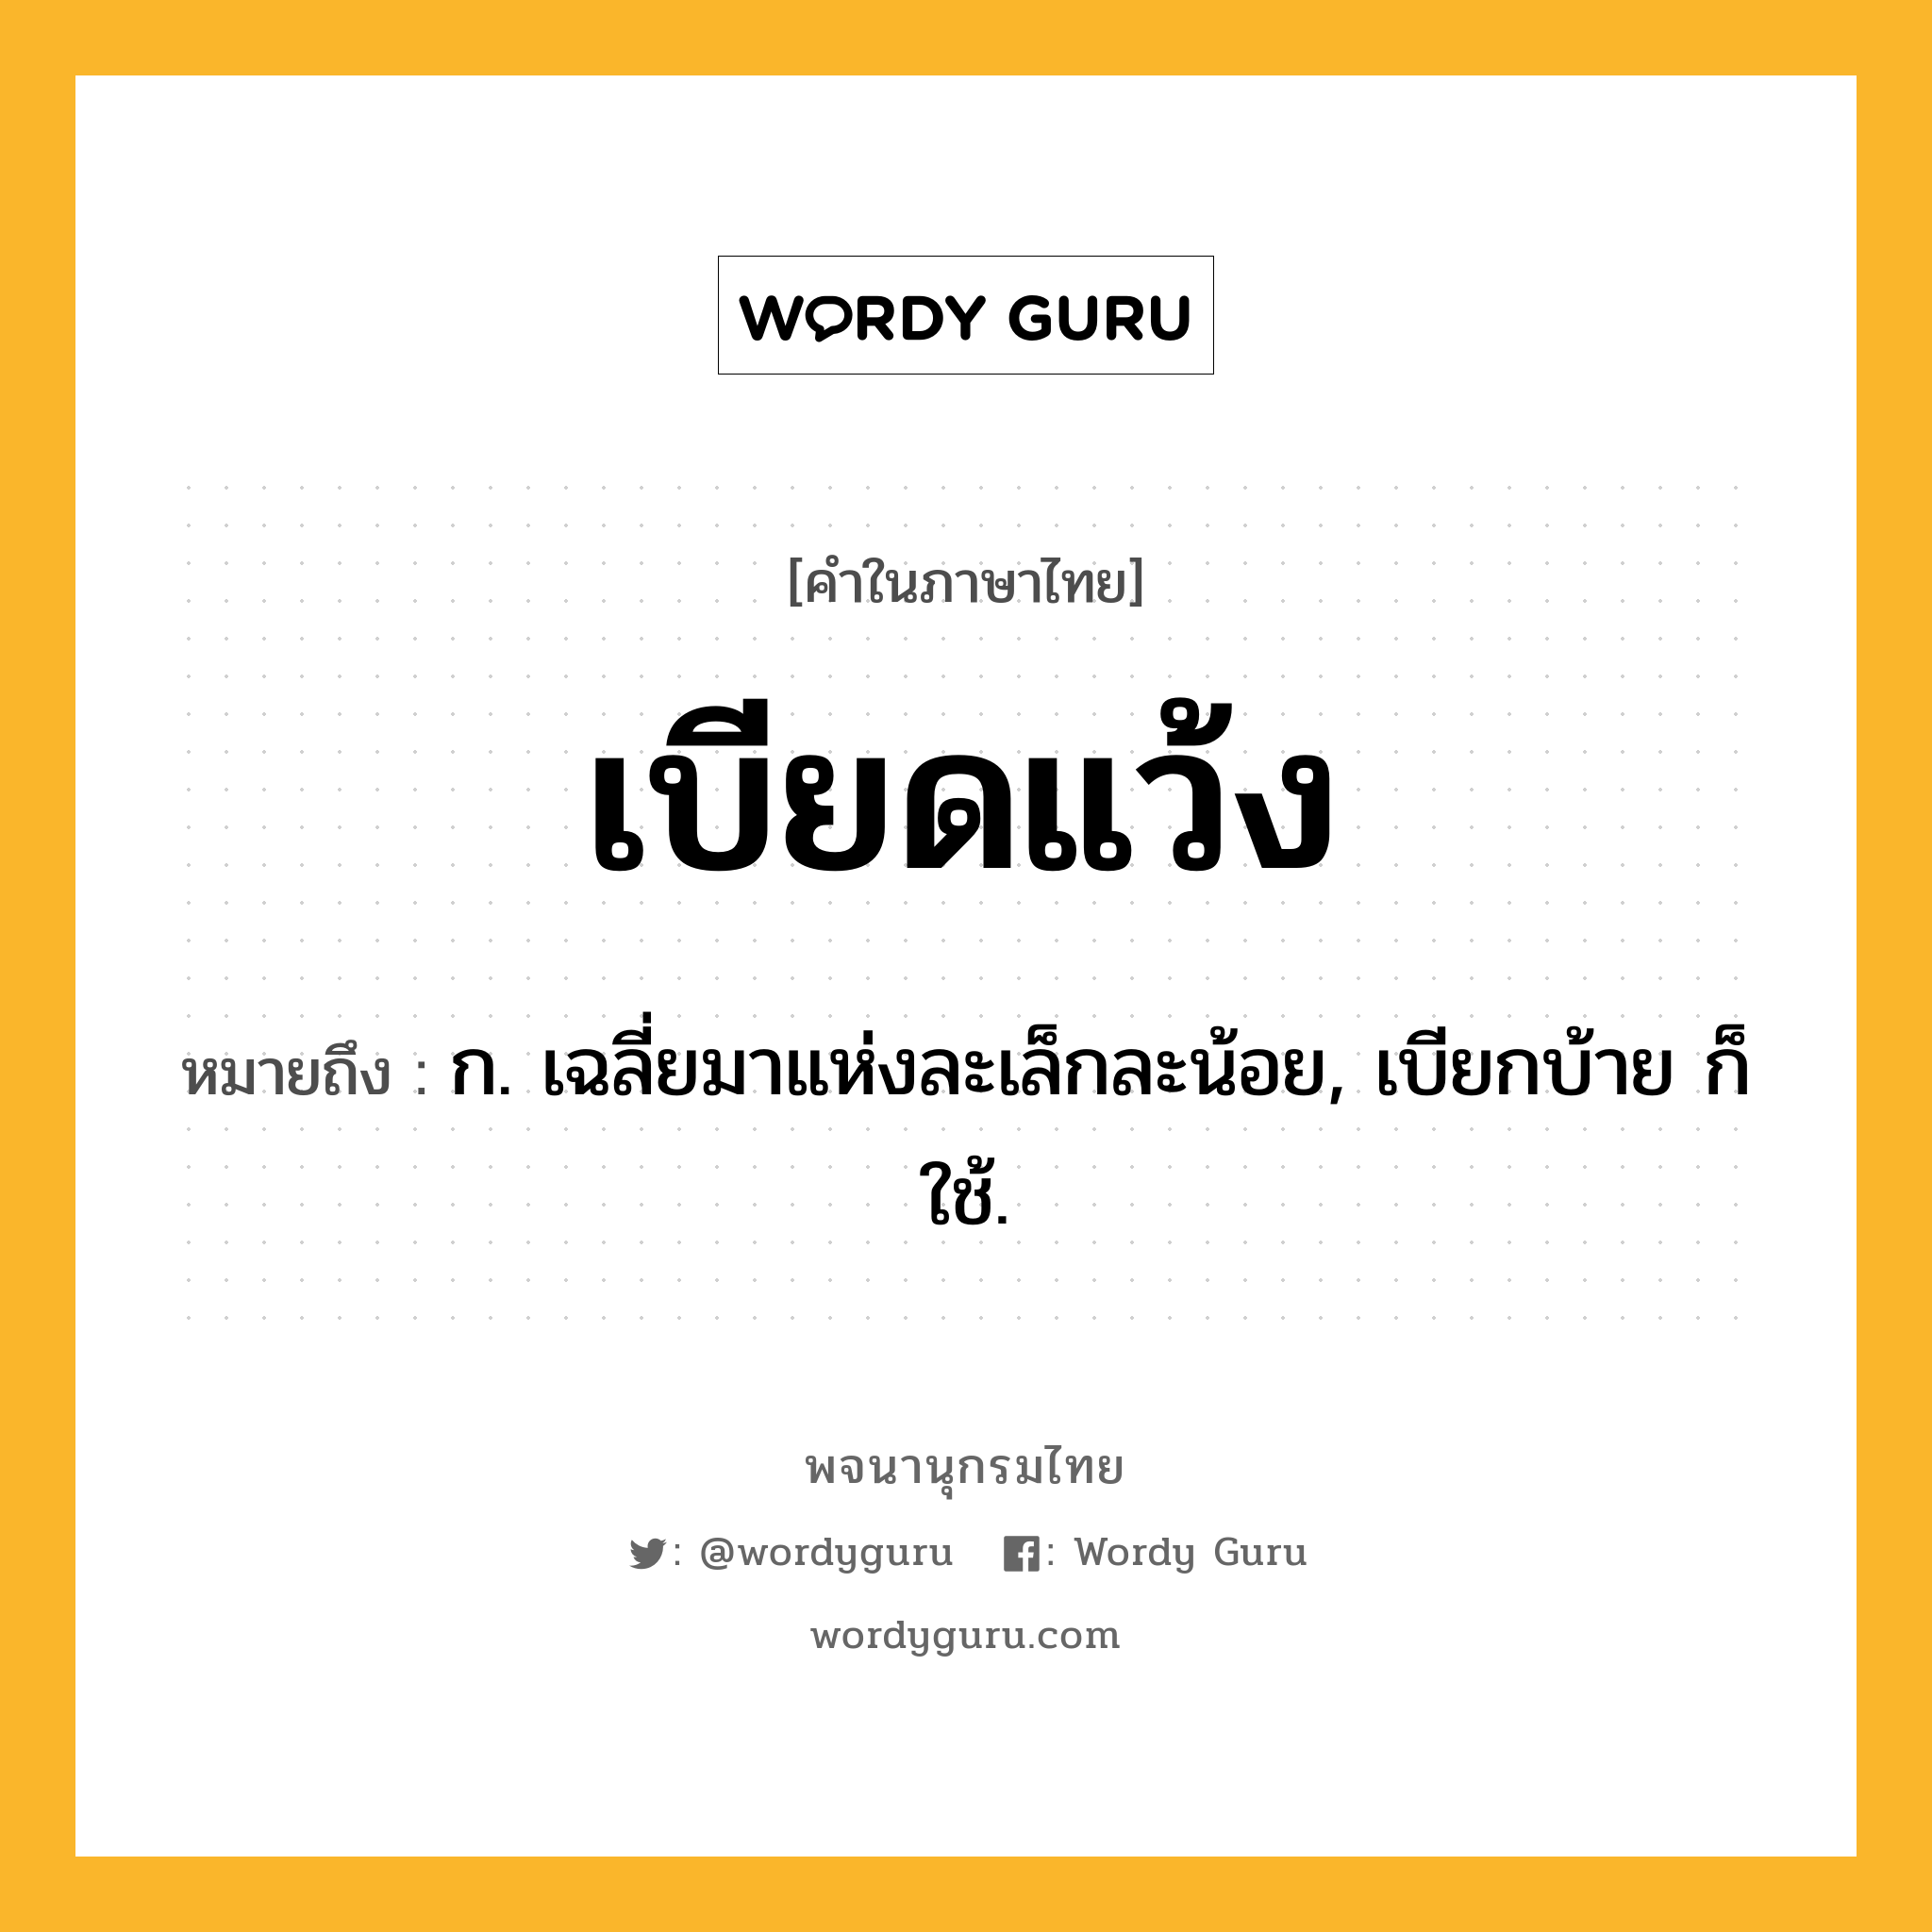 เบียดแว้ง หมายถึงอะไร?, คำในภาษาไทย เบียดแว้ง หมายถึง ก. เฉลี่ยมาแห่งละเล็กละน้อย, เบียกบ้าย ก็ใช้.